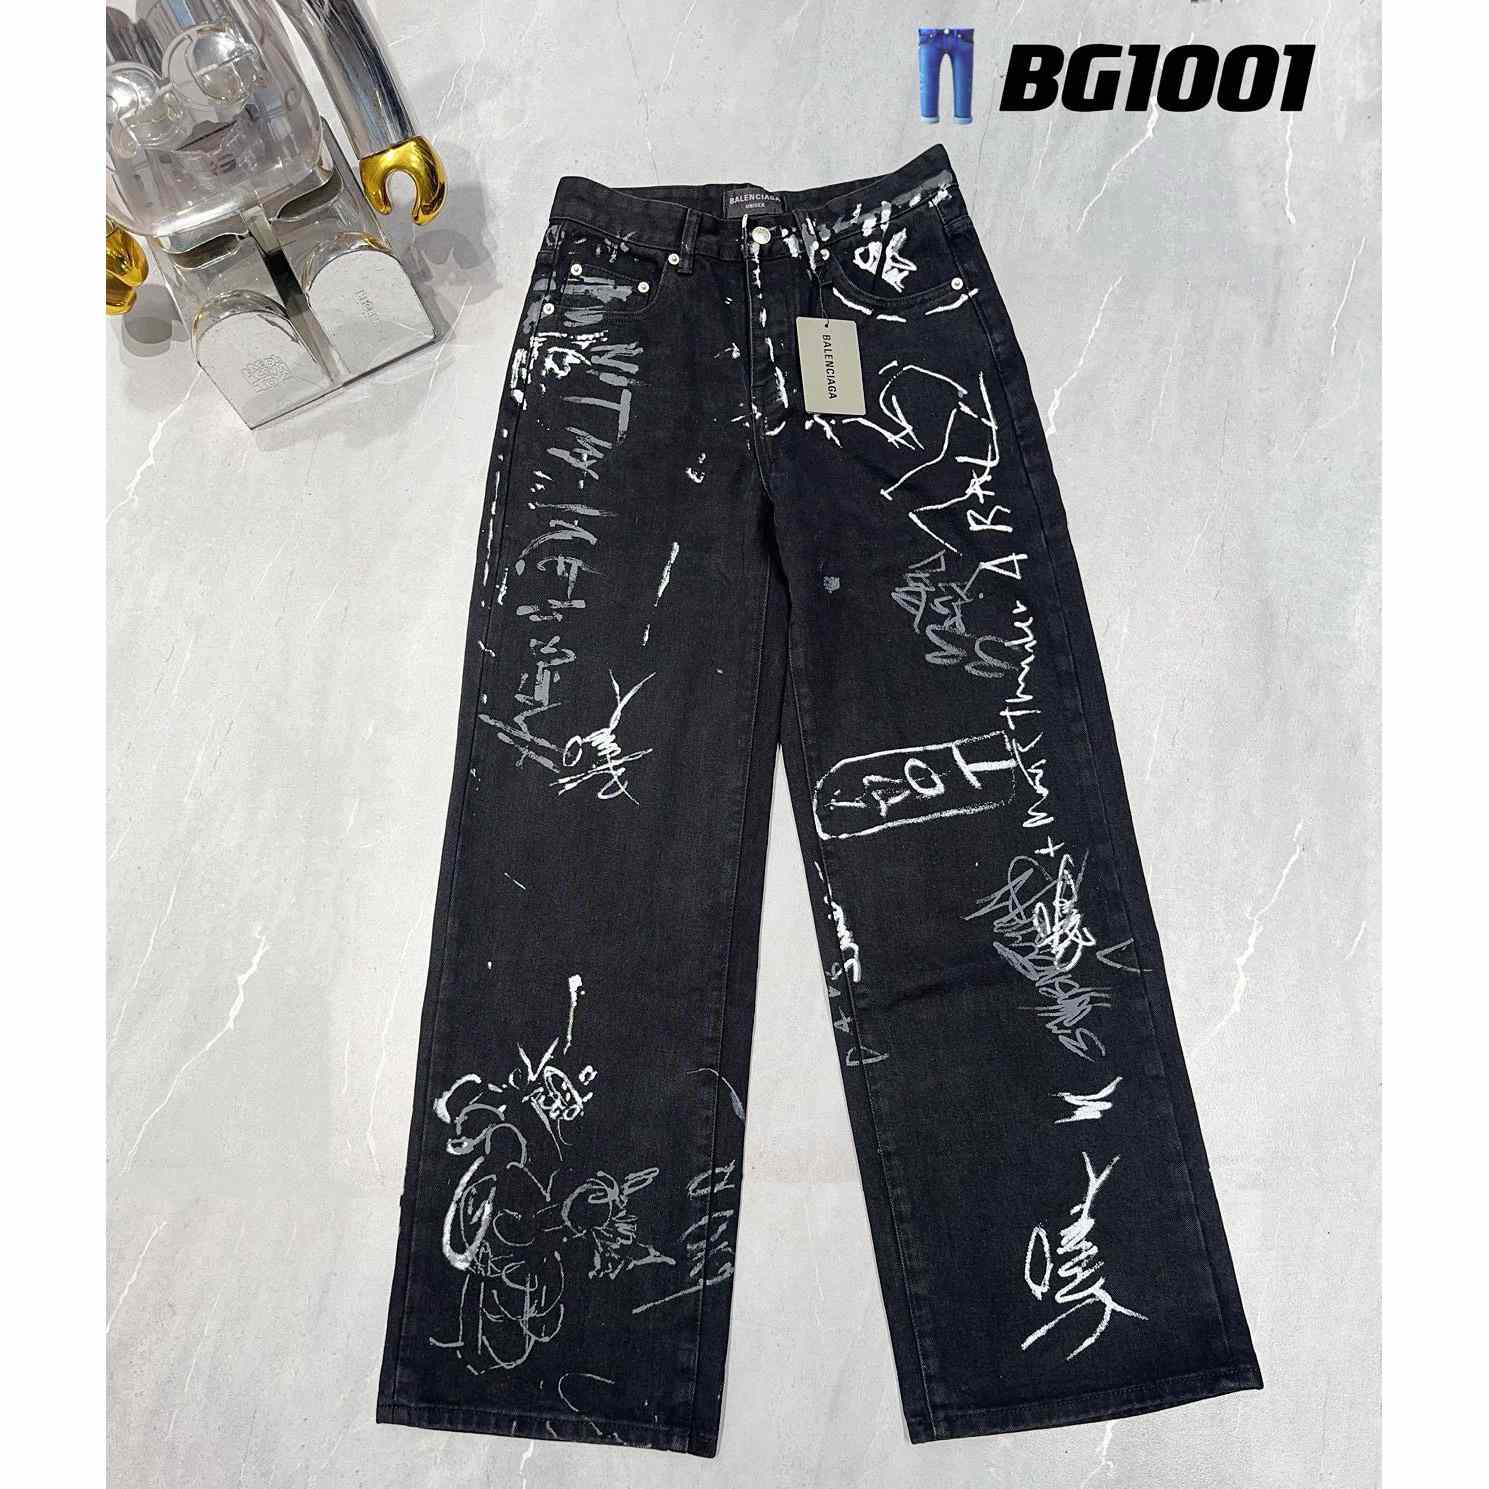 Balenciaga Jeans   BG1001 - DesignerGu